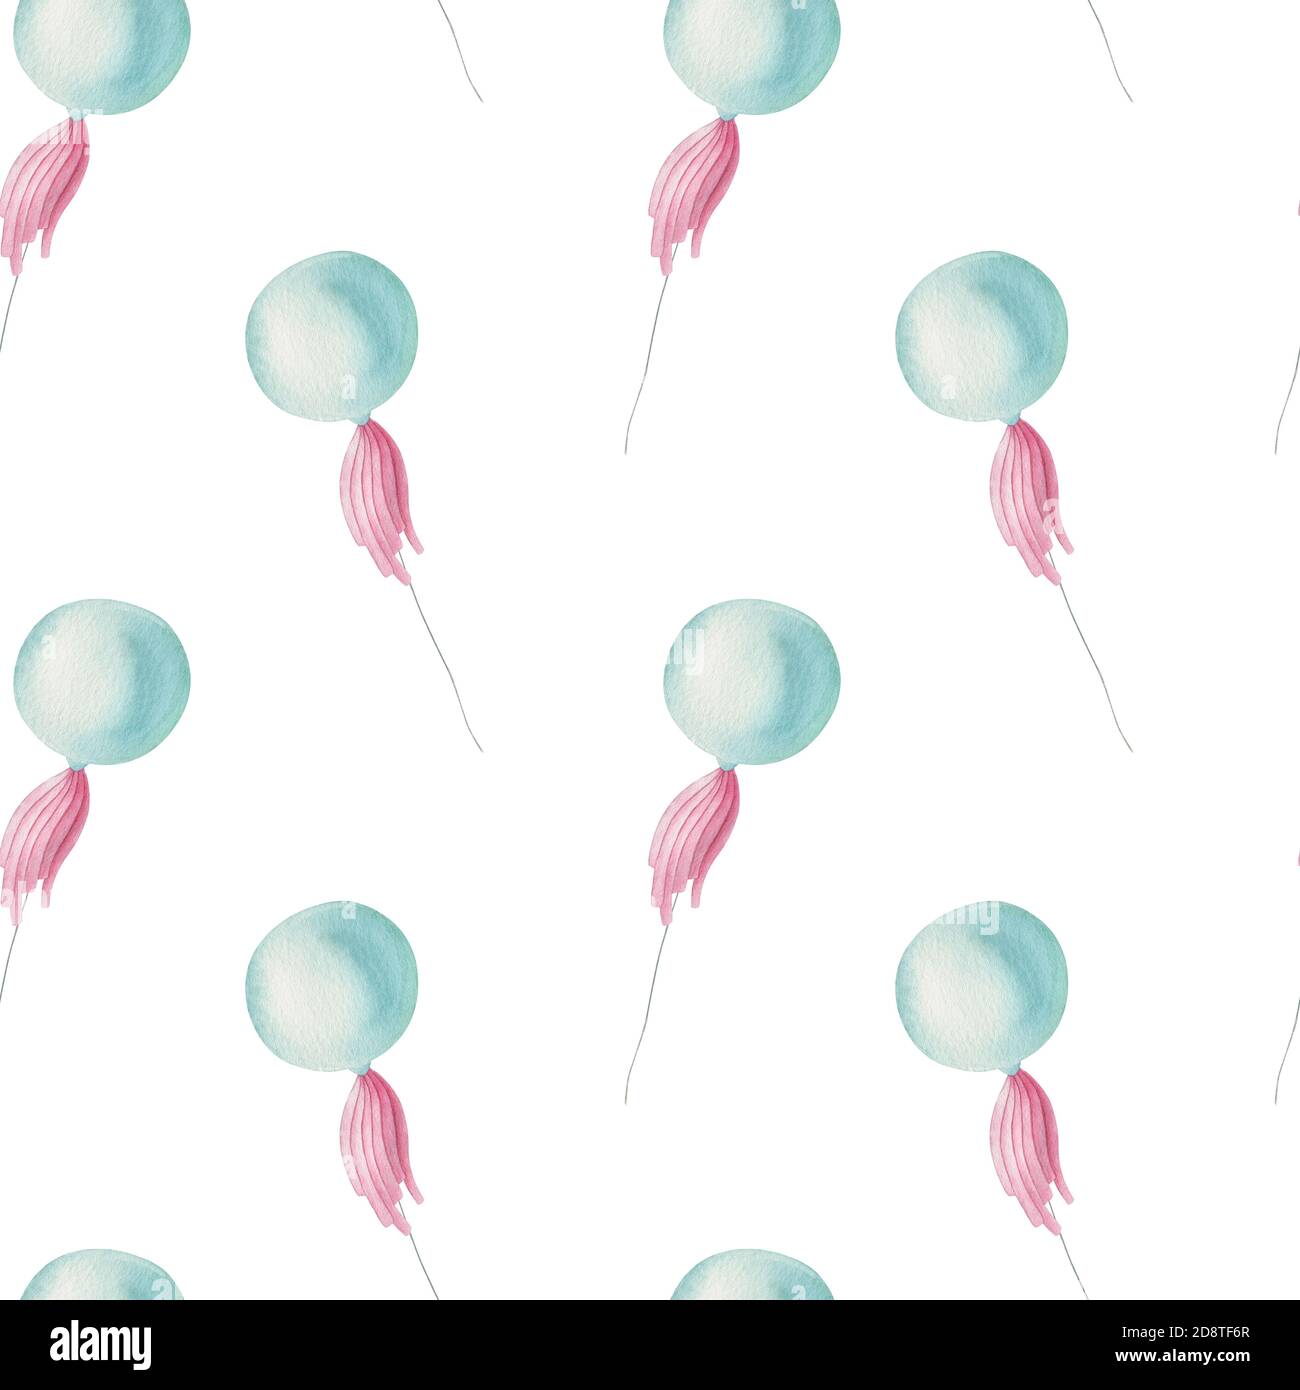 Aquarelle joli motif ballon sur fond clair. Illustration enfants lumineuse avec éléments isolés. Banque D'Images